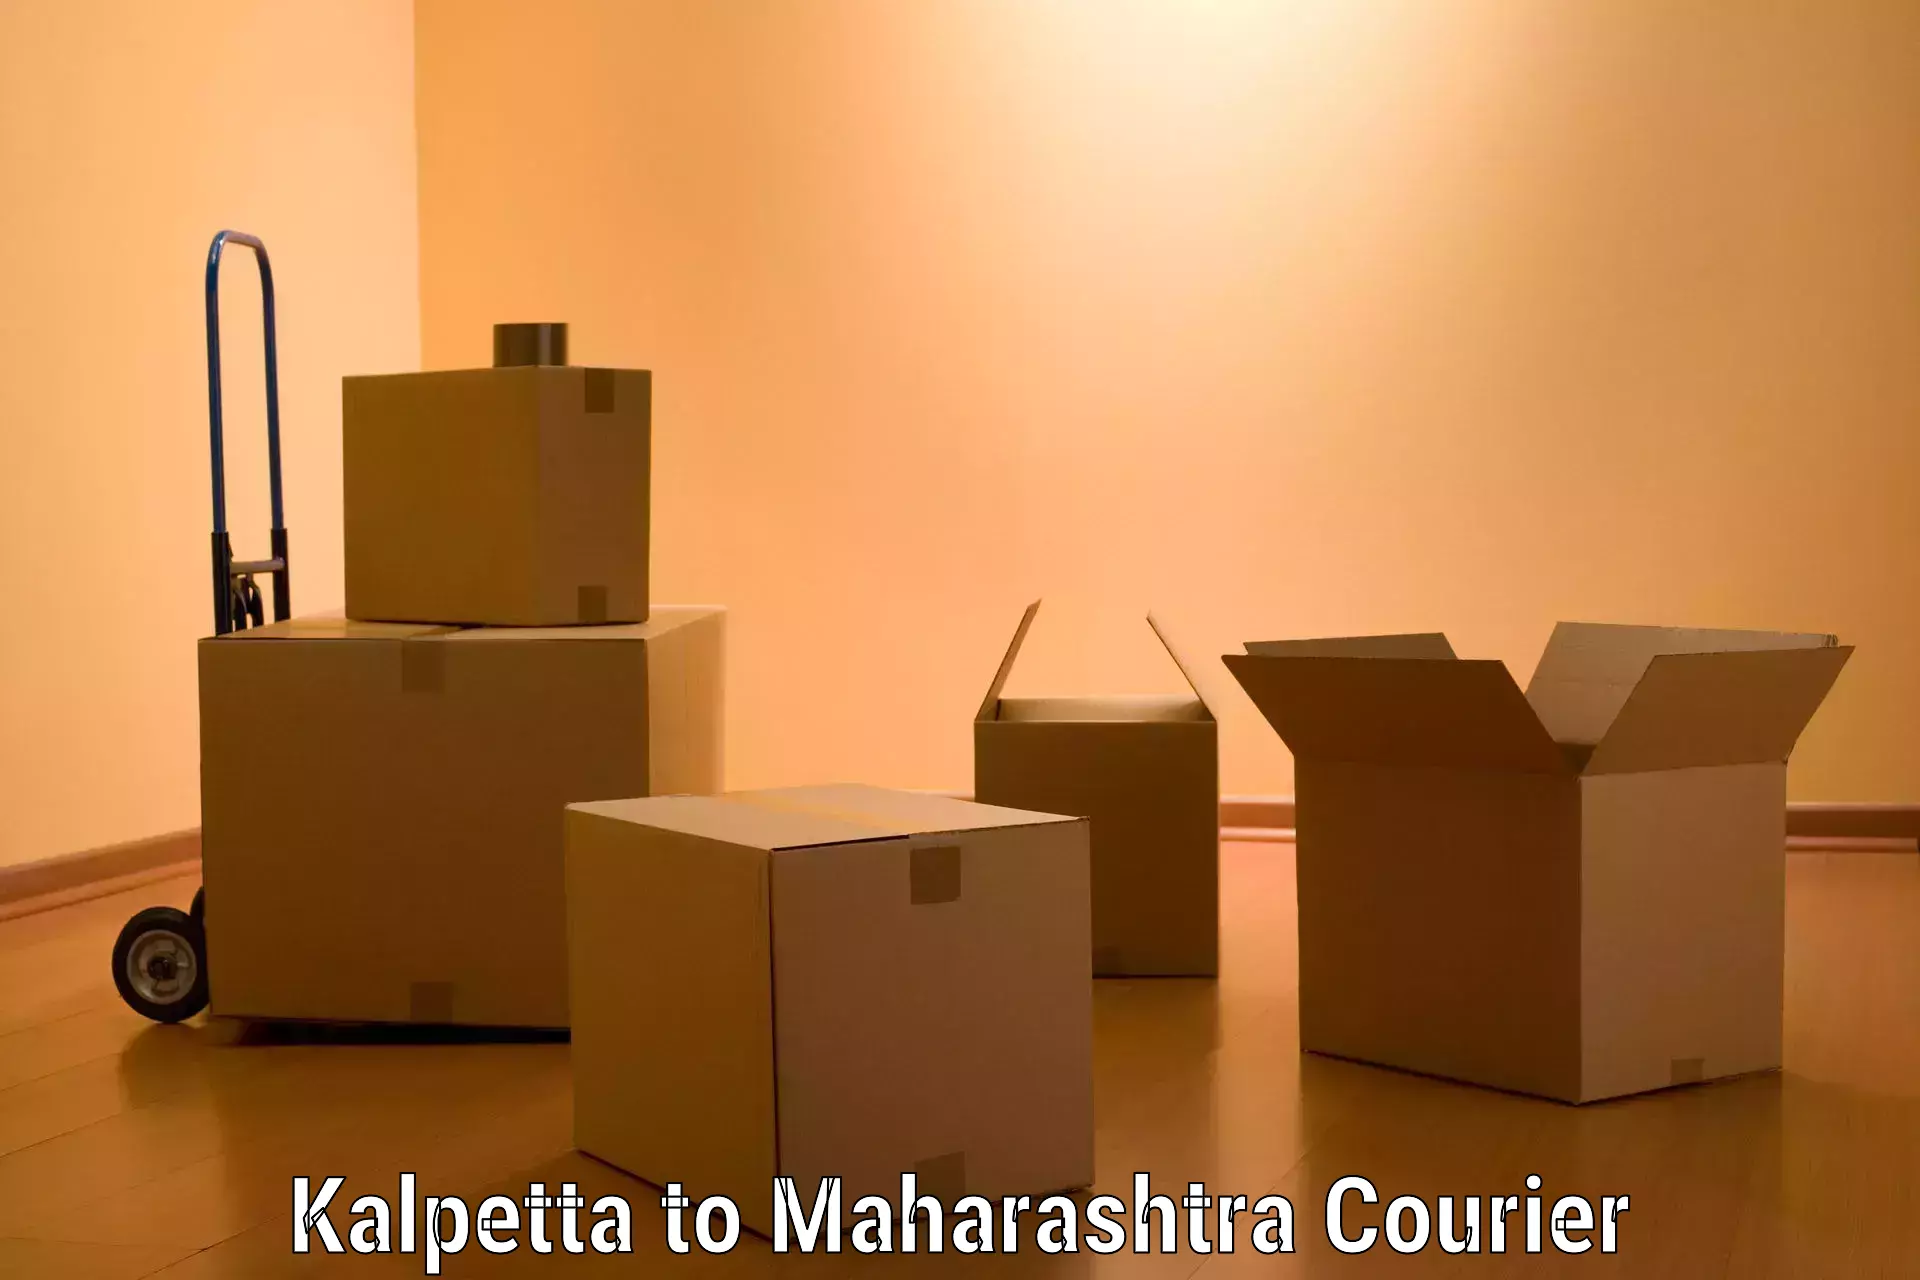 Furniture transport service Kalpetta to Maharashtra